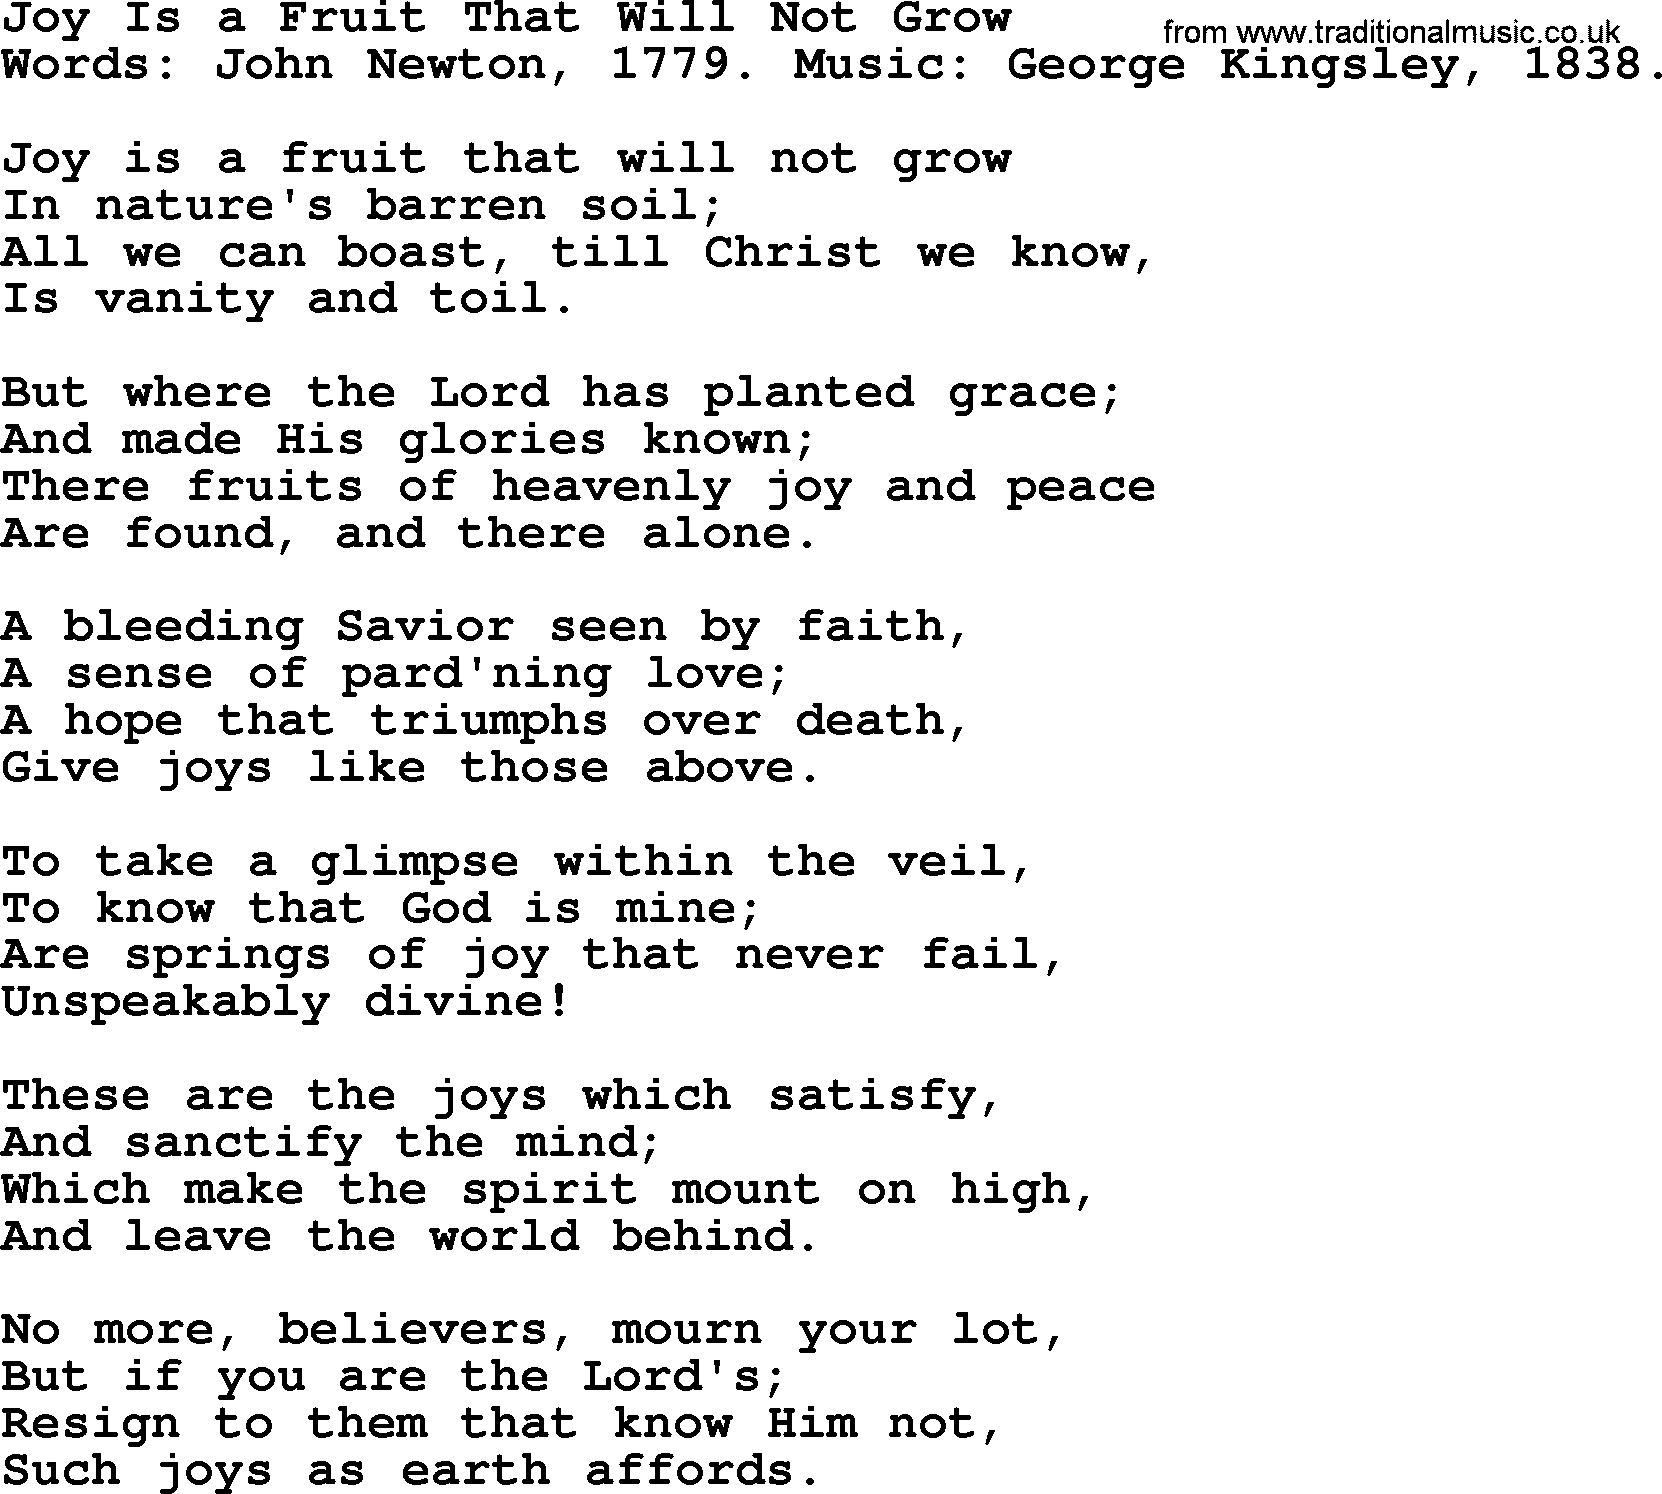 John Newton hymn: Joy Is A Fruit That Will Not Grow, lyrics